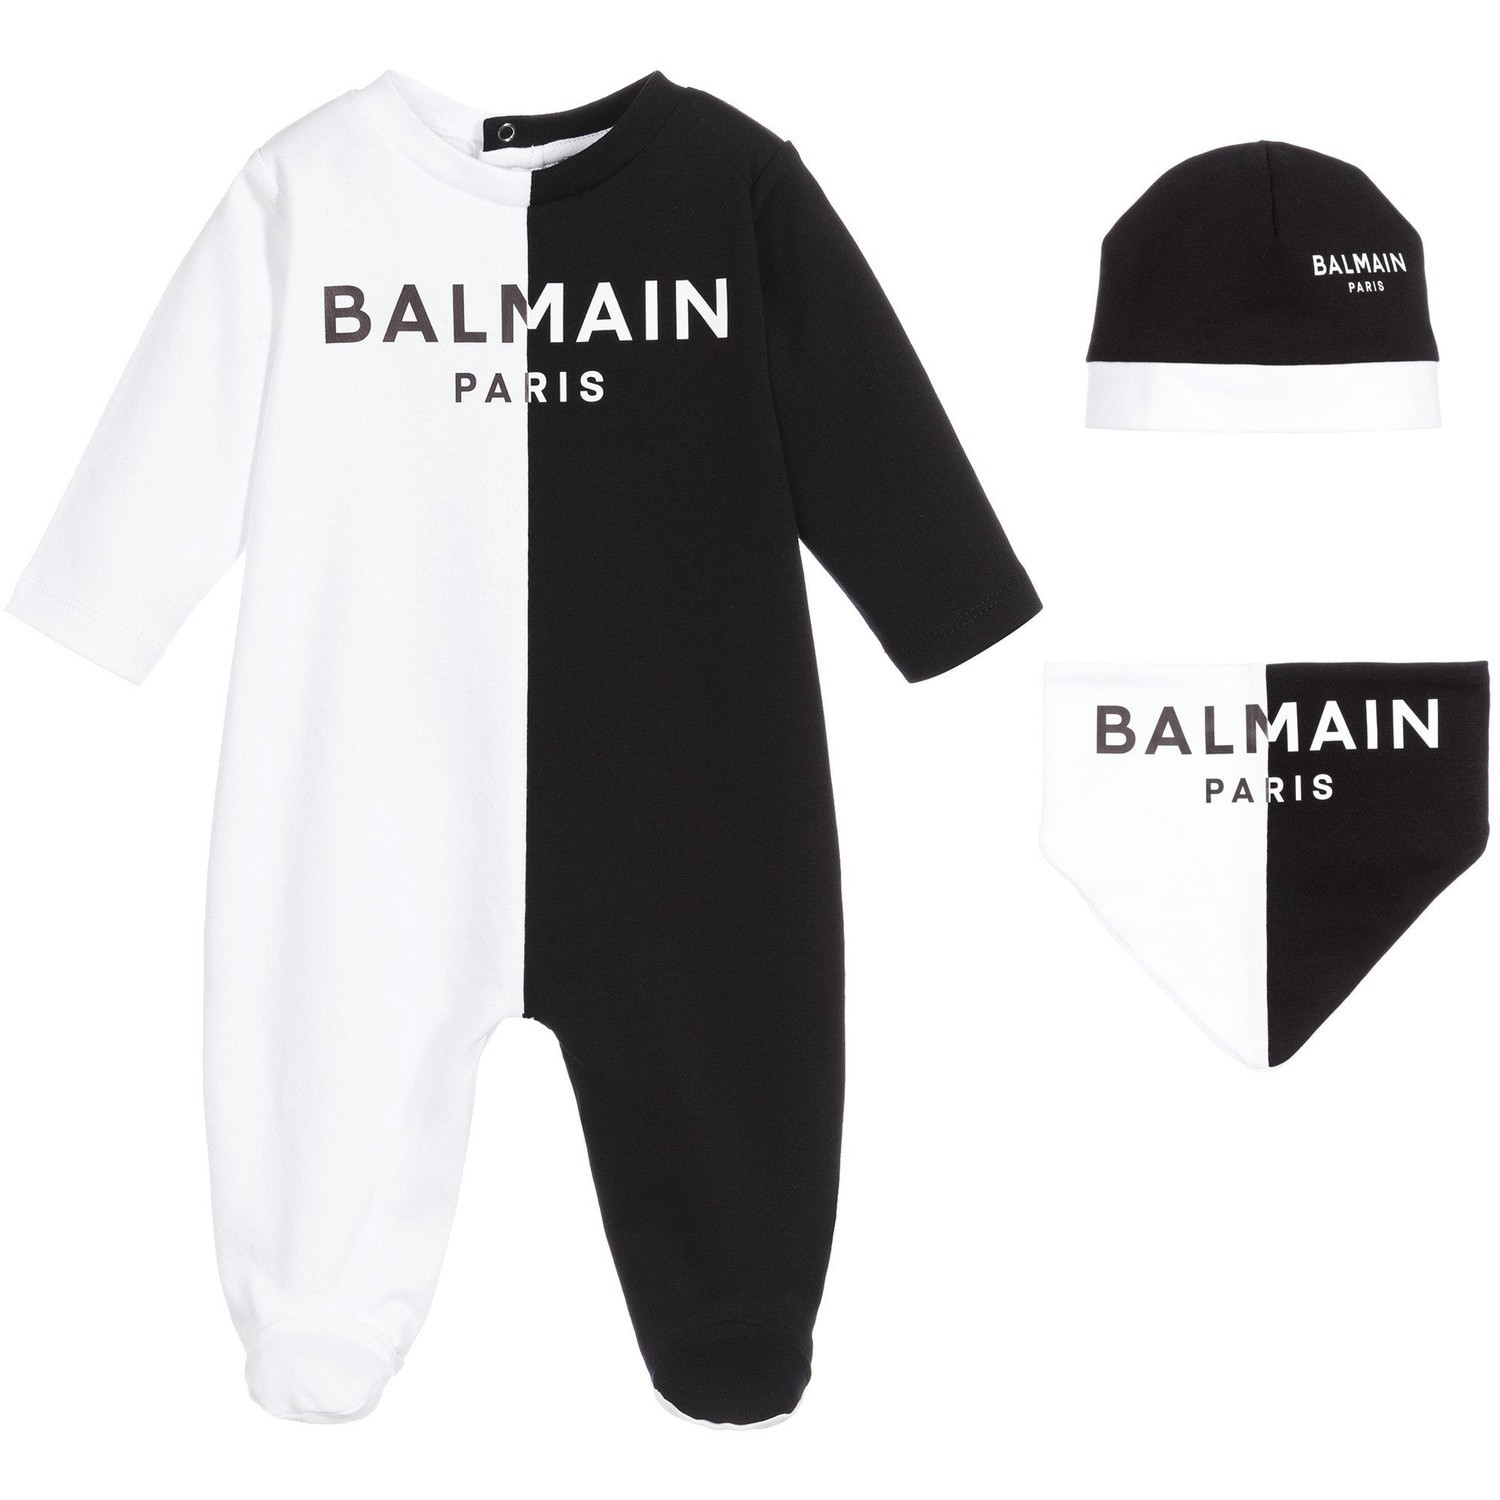 Balmain Boys White & Black Cotton Babygrow Gift Set Unisex Black/white 3M